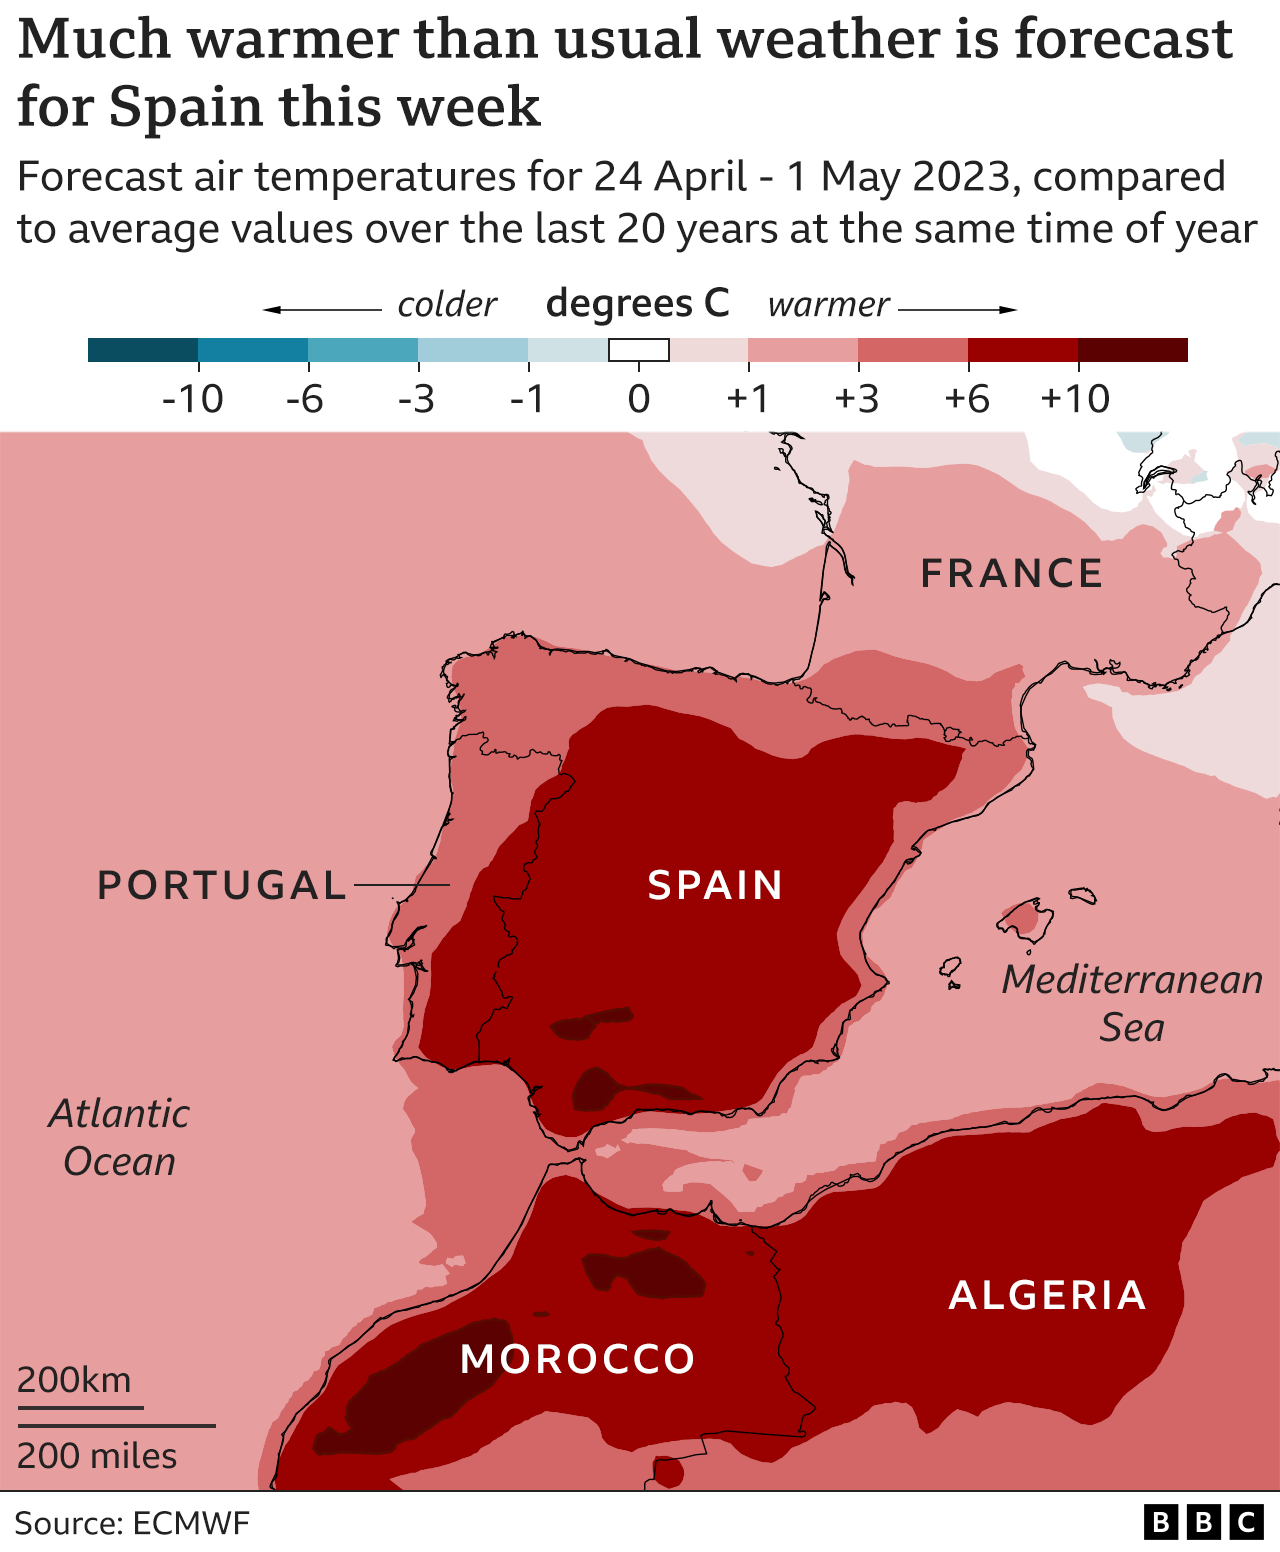 Карта, показывающая прогноз разницы температур над юго-западной Европой и северо-западной Африкой на неделю с 24 апреля по 1 мая по сравнению с последними 20 годами в то же время года. На большей части территории Испании от 6 до 10°C теплее, чем обычно, а в некоторых местах более 10°C. Температуры также особенно высоки на севере Марокко и севере Алжира и выше среднего по всему региону.